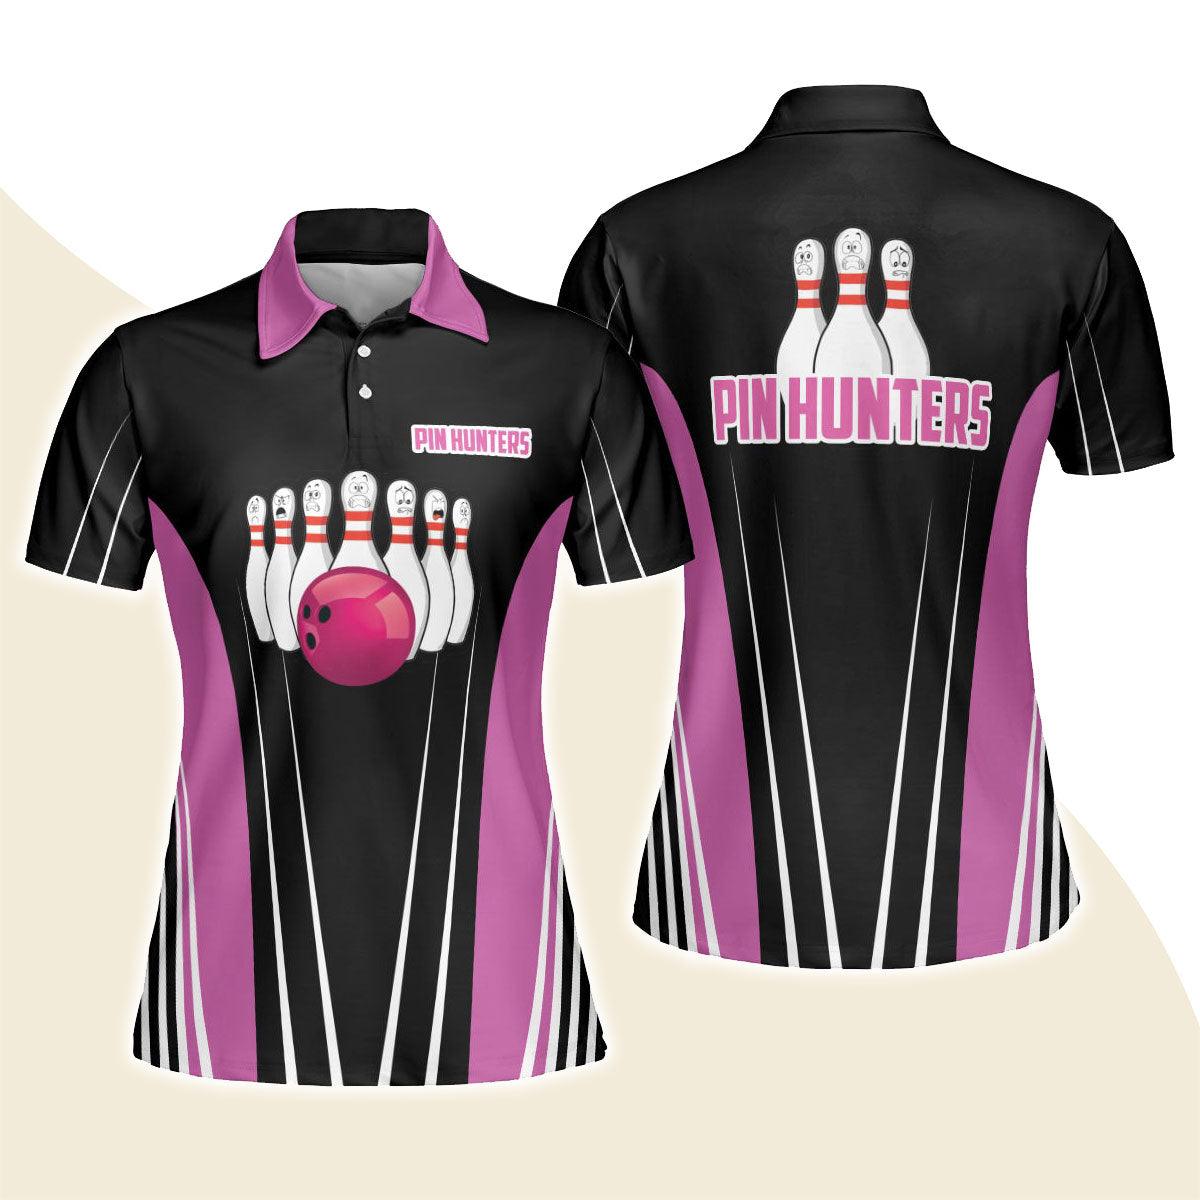 Bowling Women Polo Shirt - Pin Hunters Bowling Polo Shirts - Gift For Bowling Lovers, Wife, Family - Amzanimalsgift